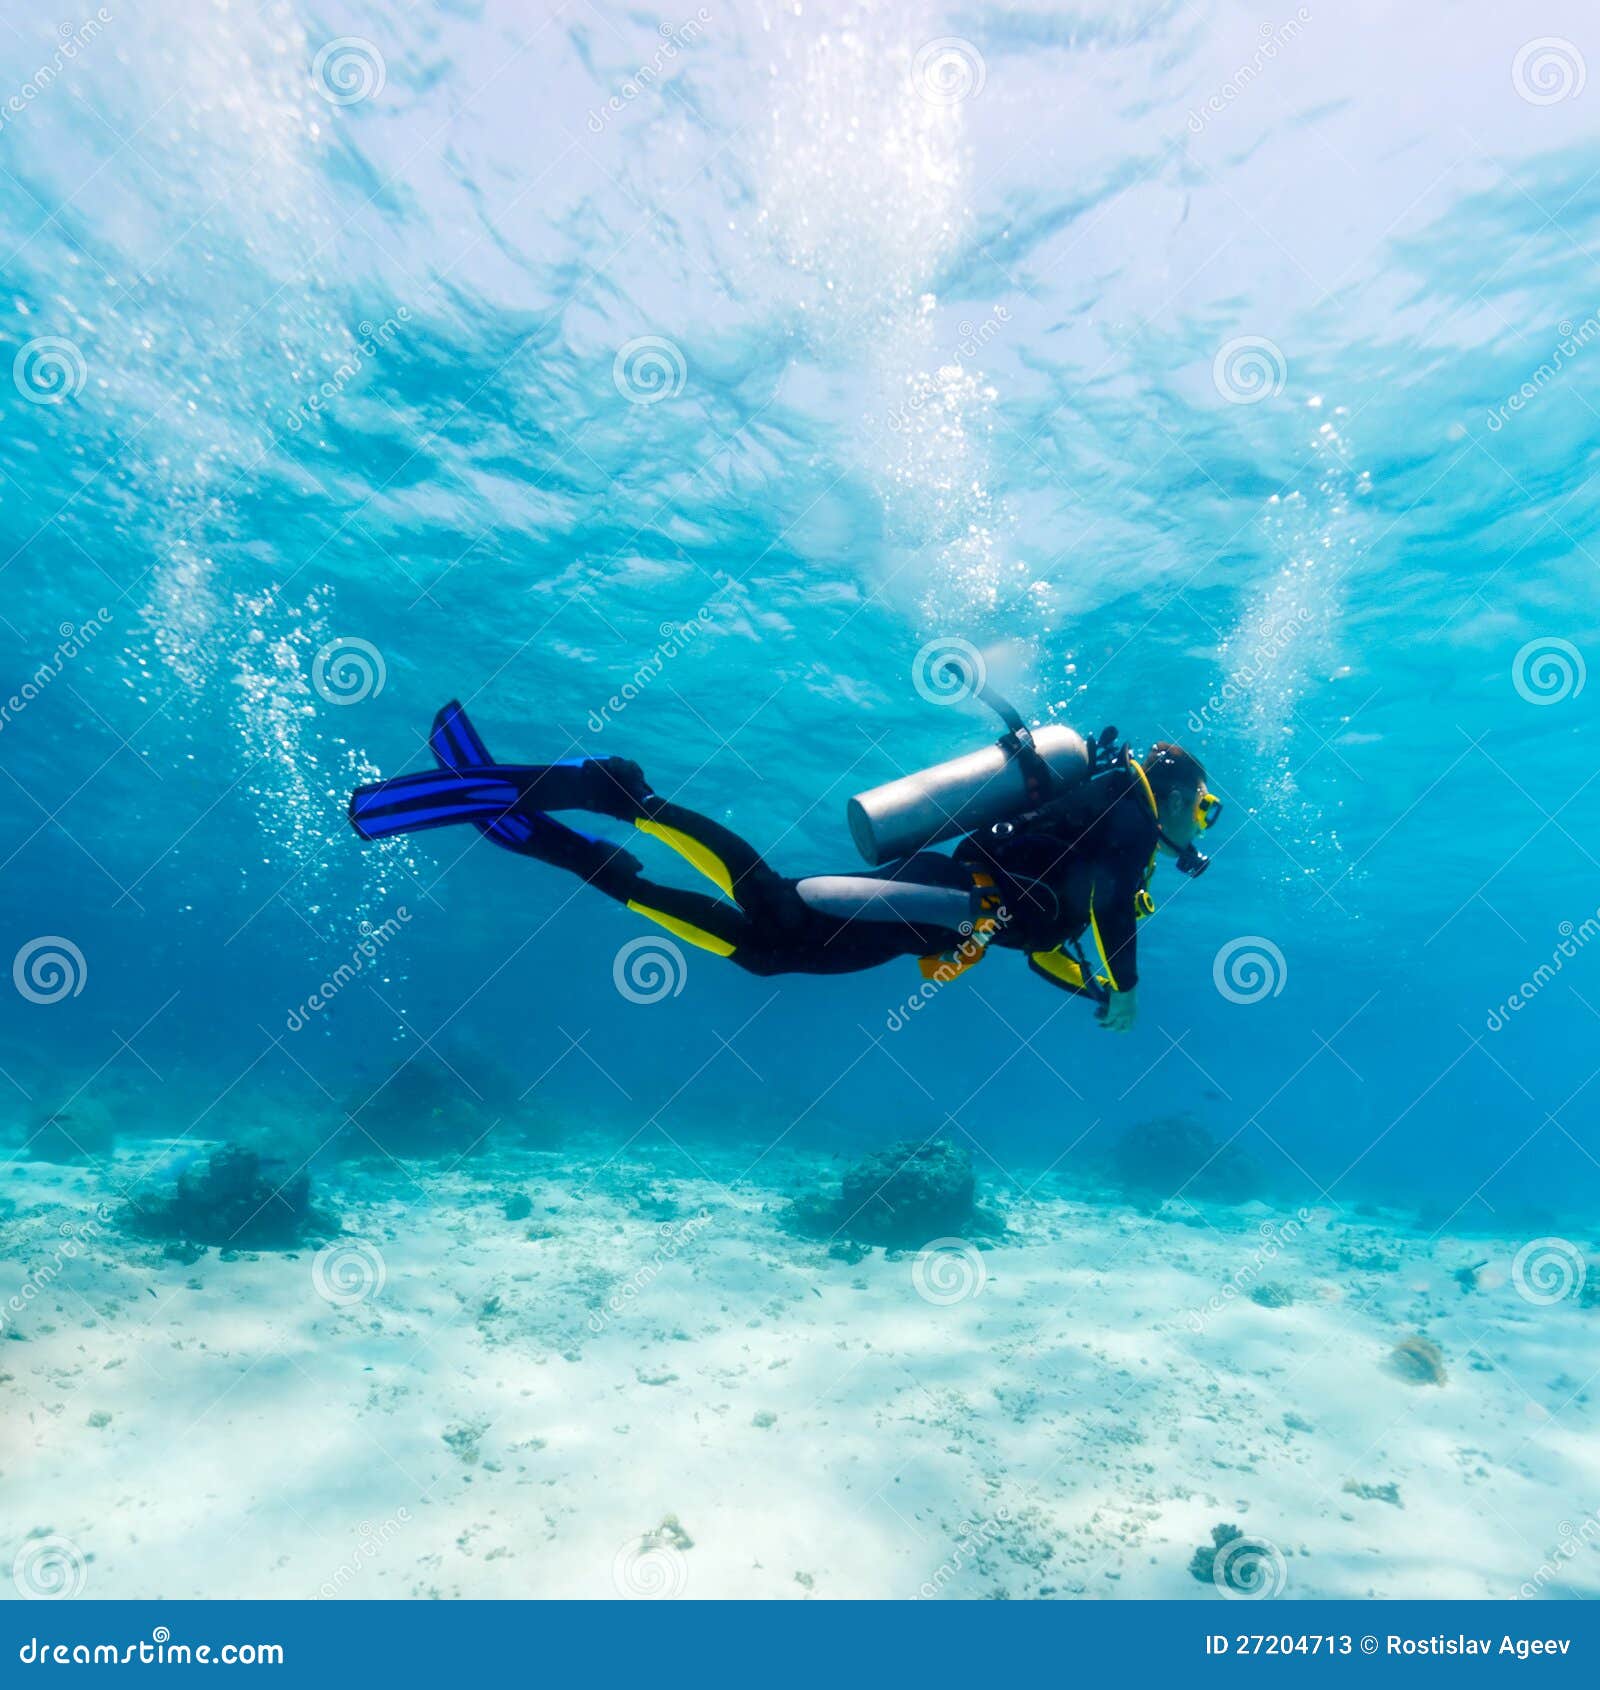 silhouette of scuba diver near sea bottom